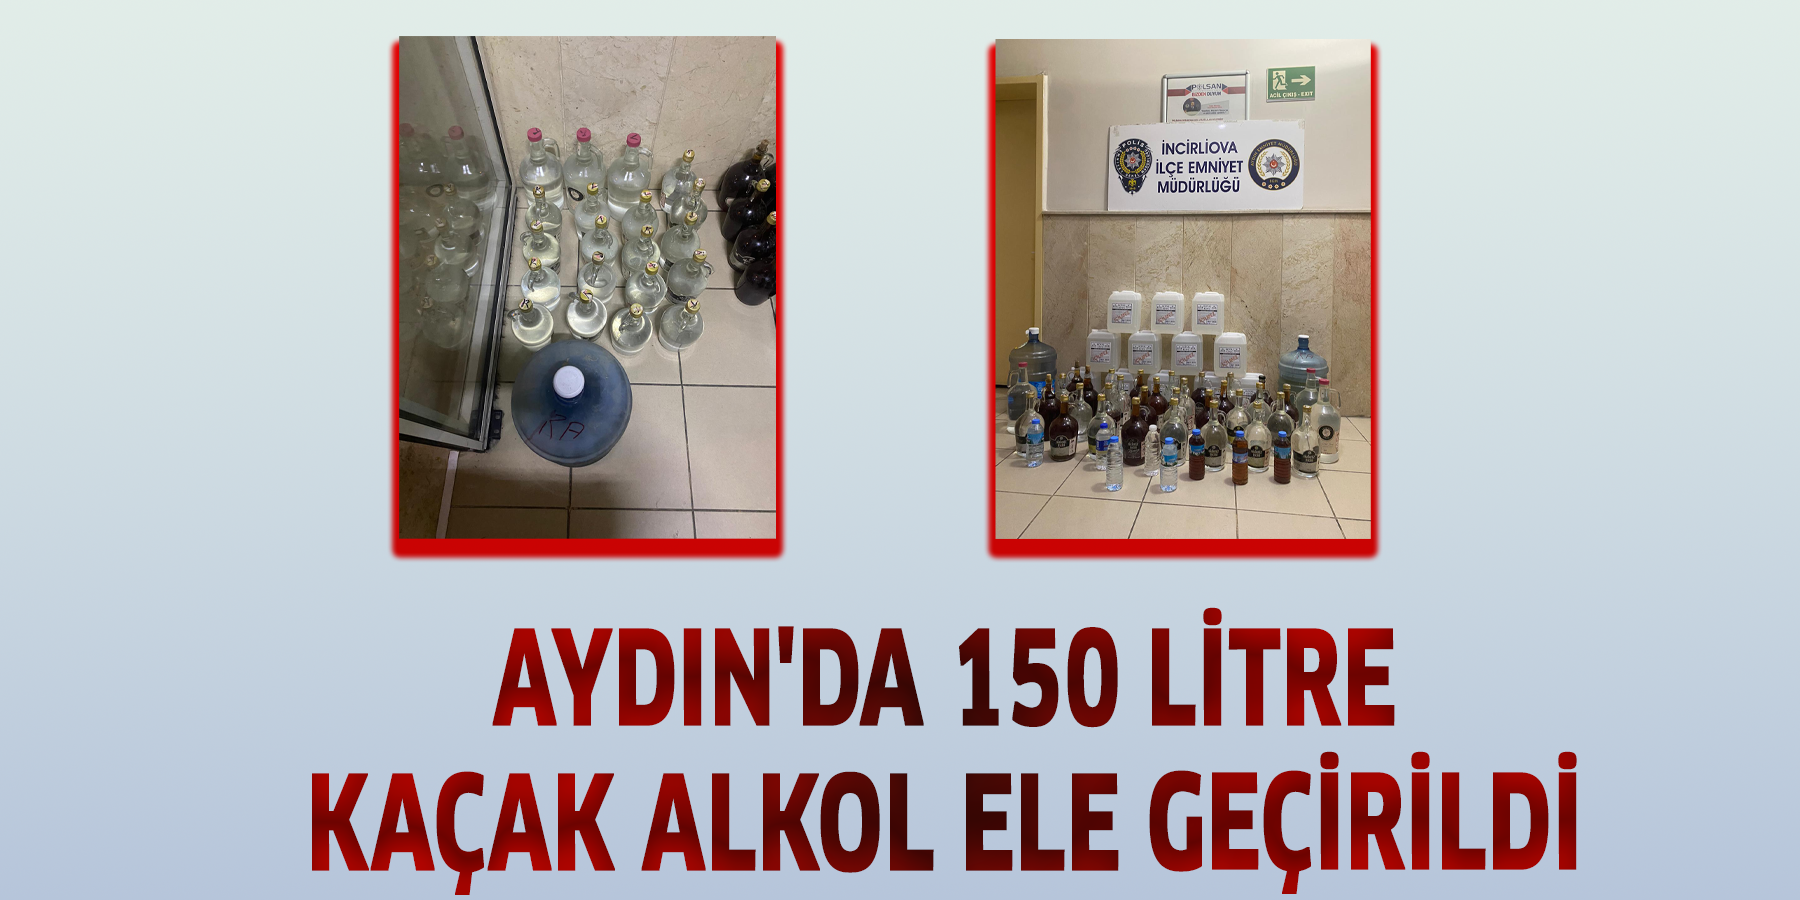 Aydın'da 150 litre kaçak alkol ele geçirildi